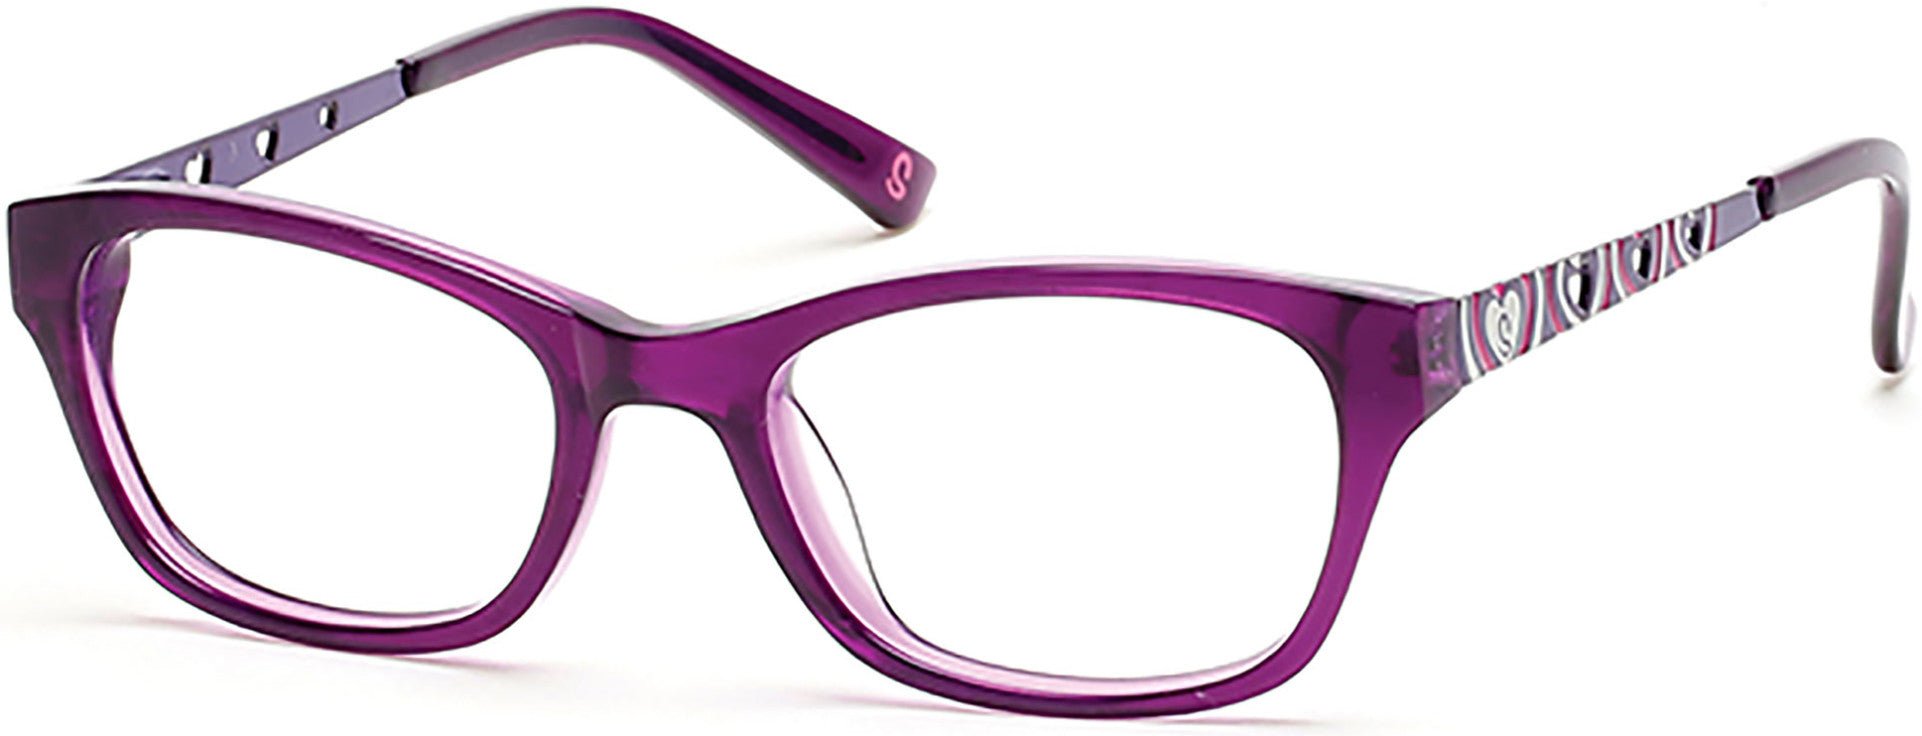 Skechers SE1601 Eyeglasses 081-081 - Shiny Violet